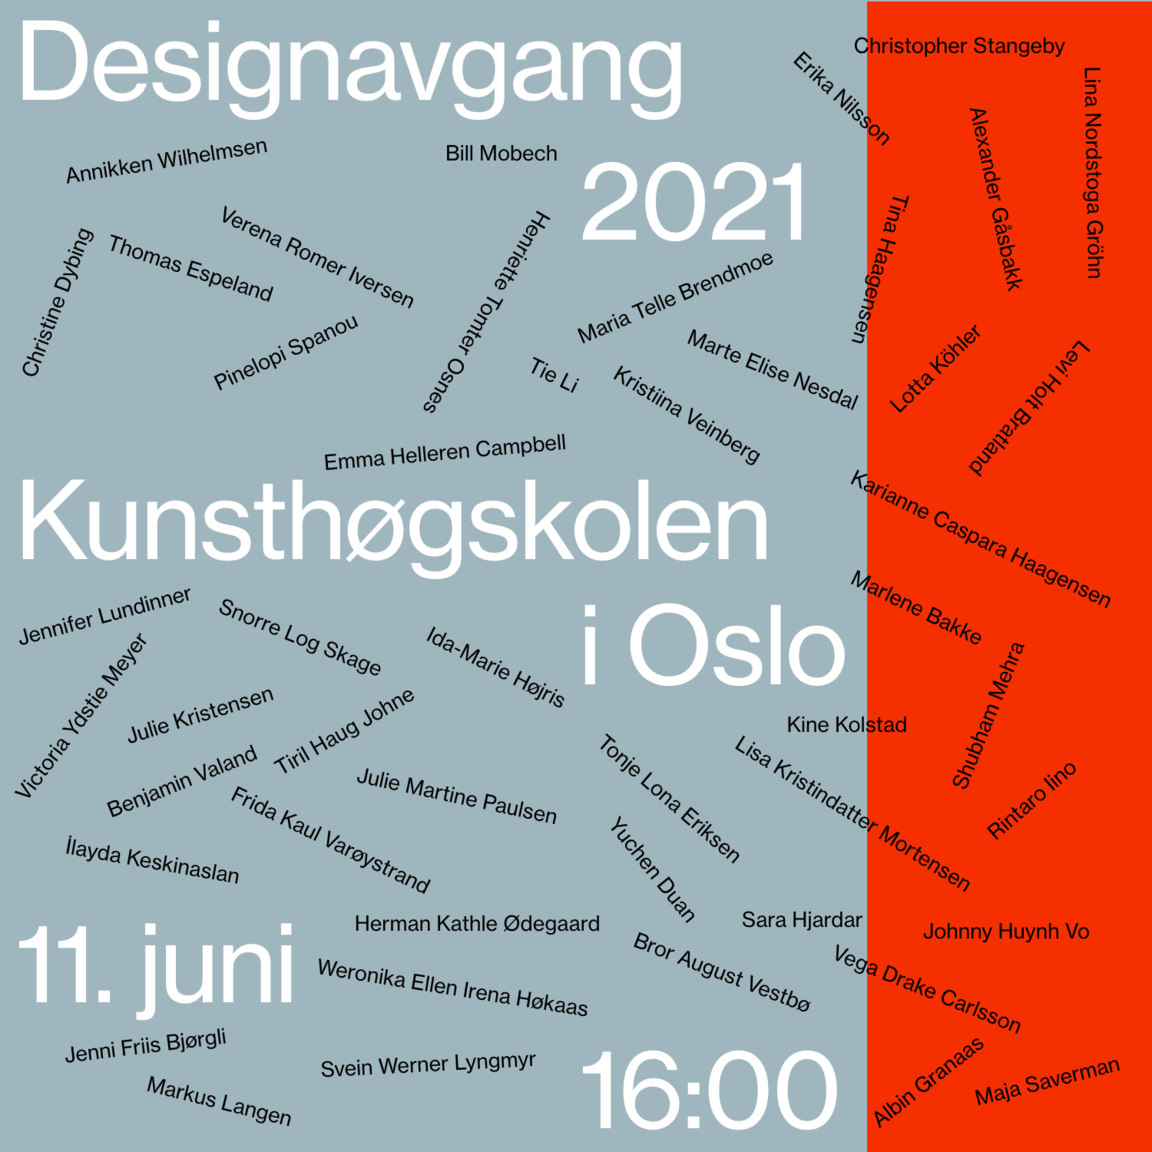 Avgang 2021: Bachelor design / Master design